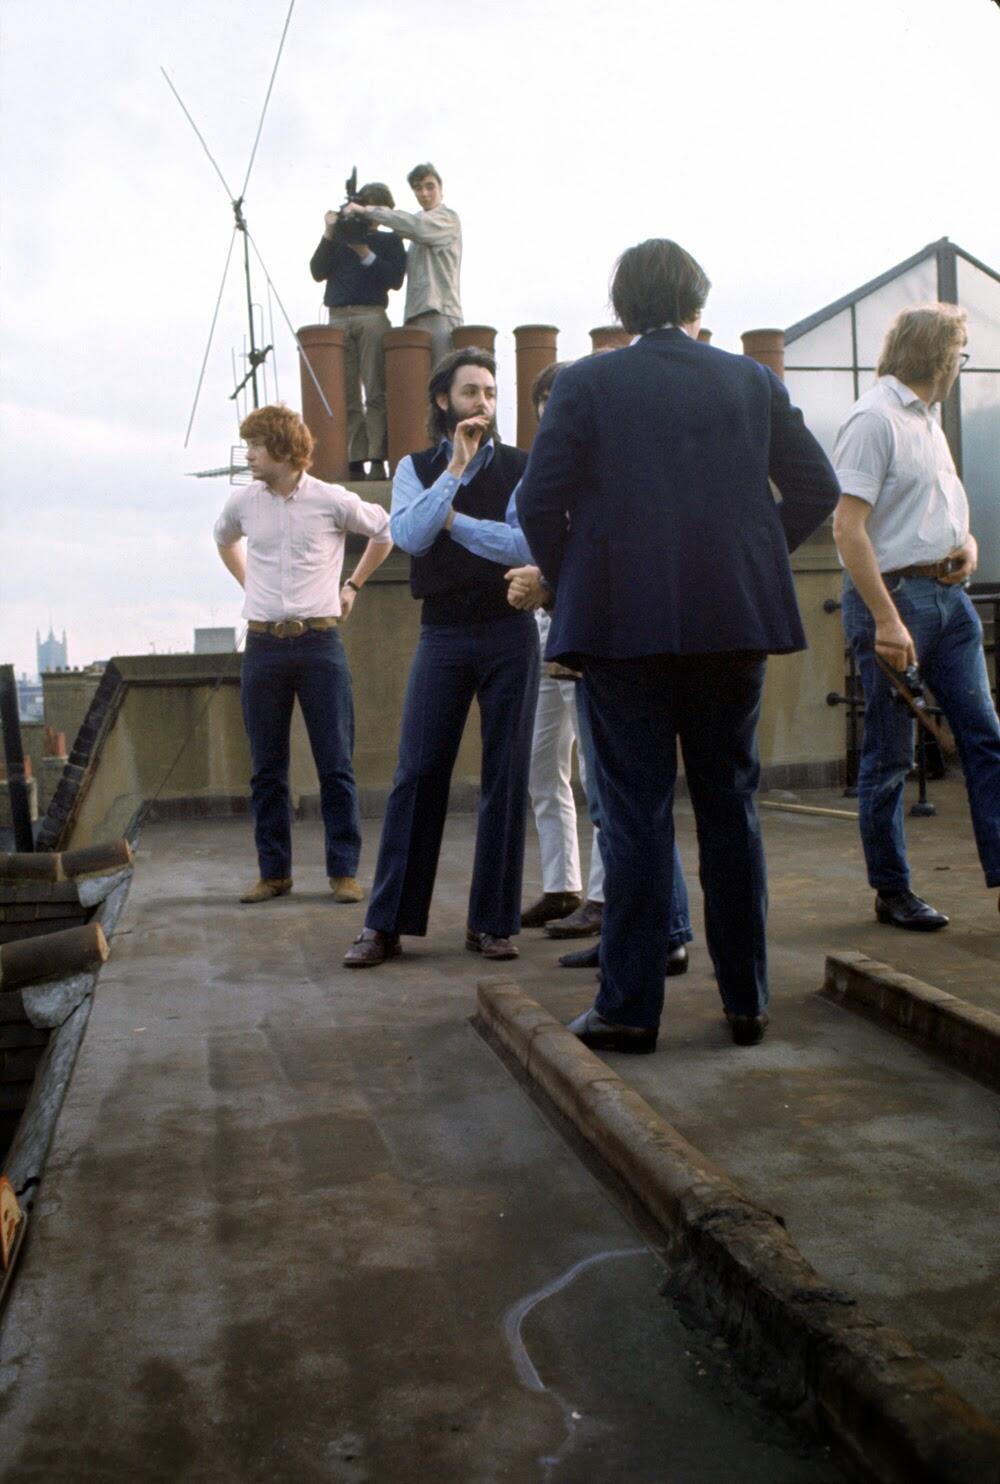 The Beatles' Rooftop Concert in 1969 (6)